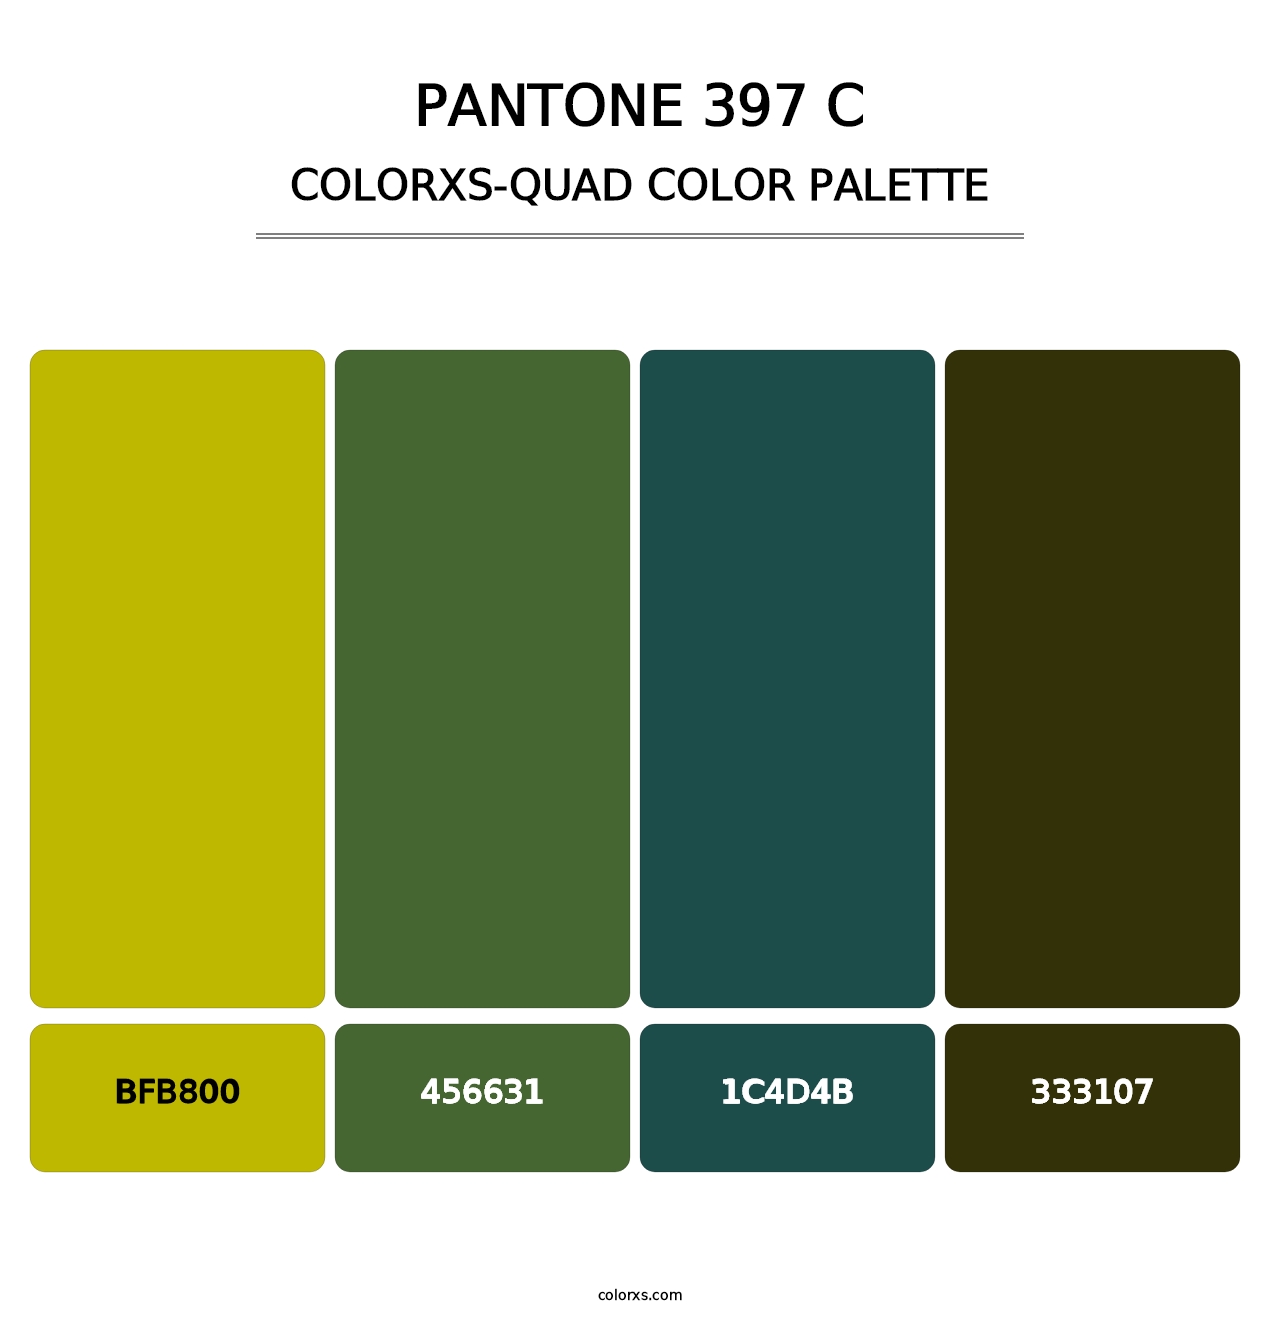 PANTONE 397 C - Colorxs Quad Palette